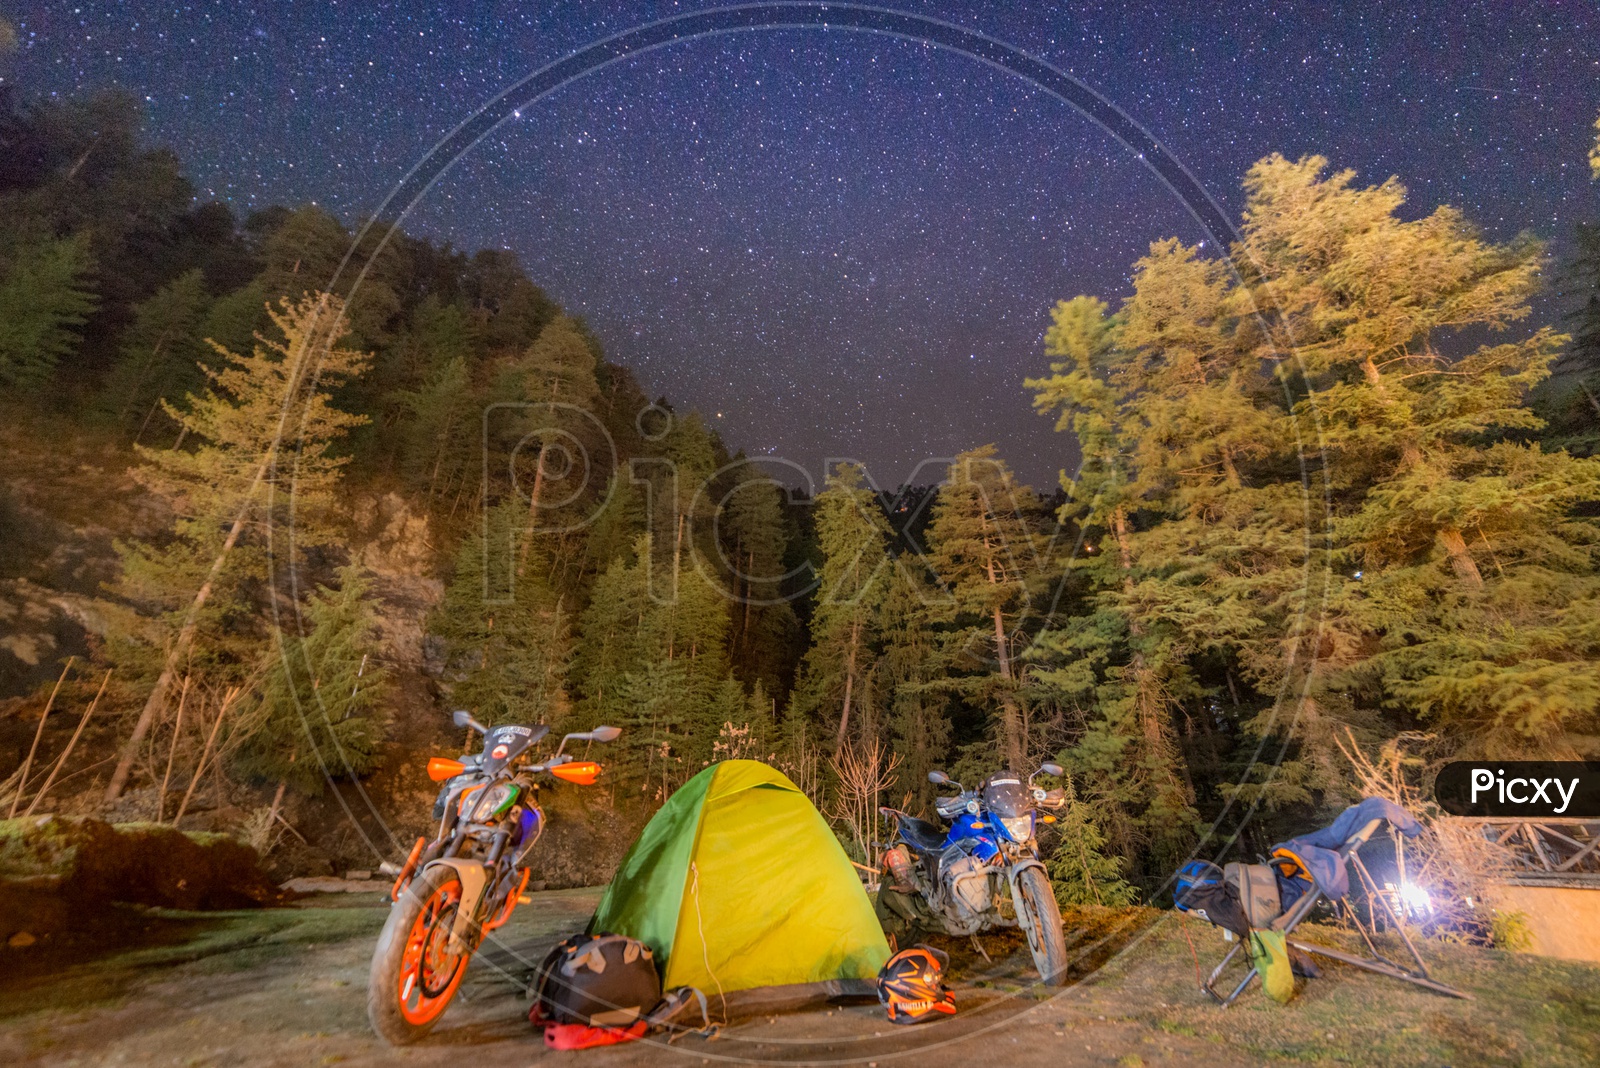 Biker Camping Tent in Himalayas at Jibhi